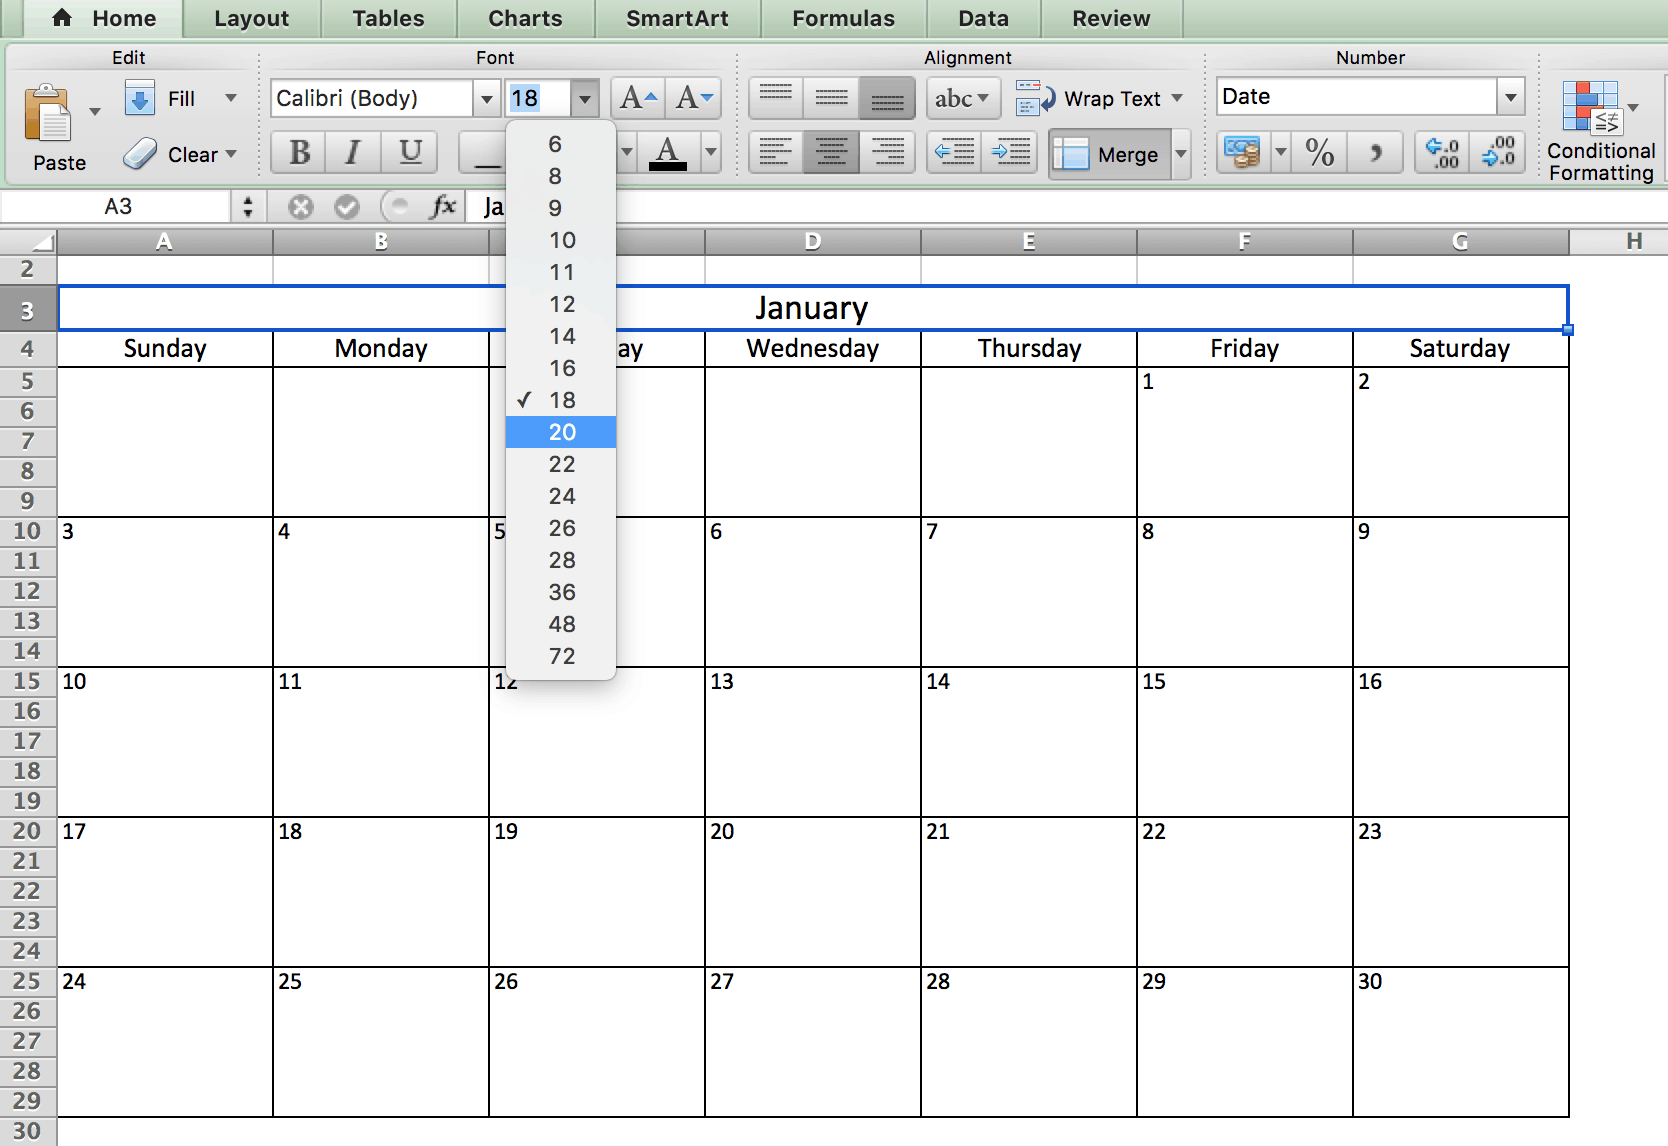 Plantillas De Calendario En Excel Gratuitas Y Listas Para Imprimir Para Images